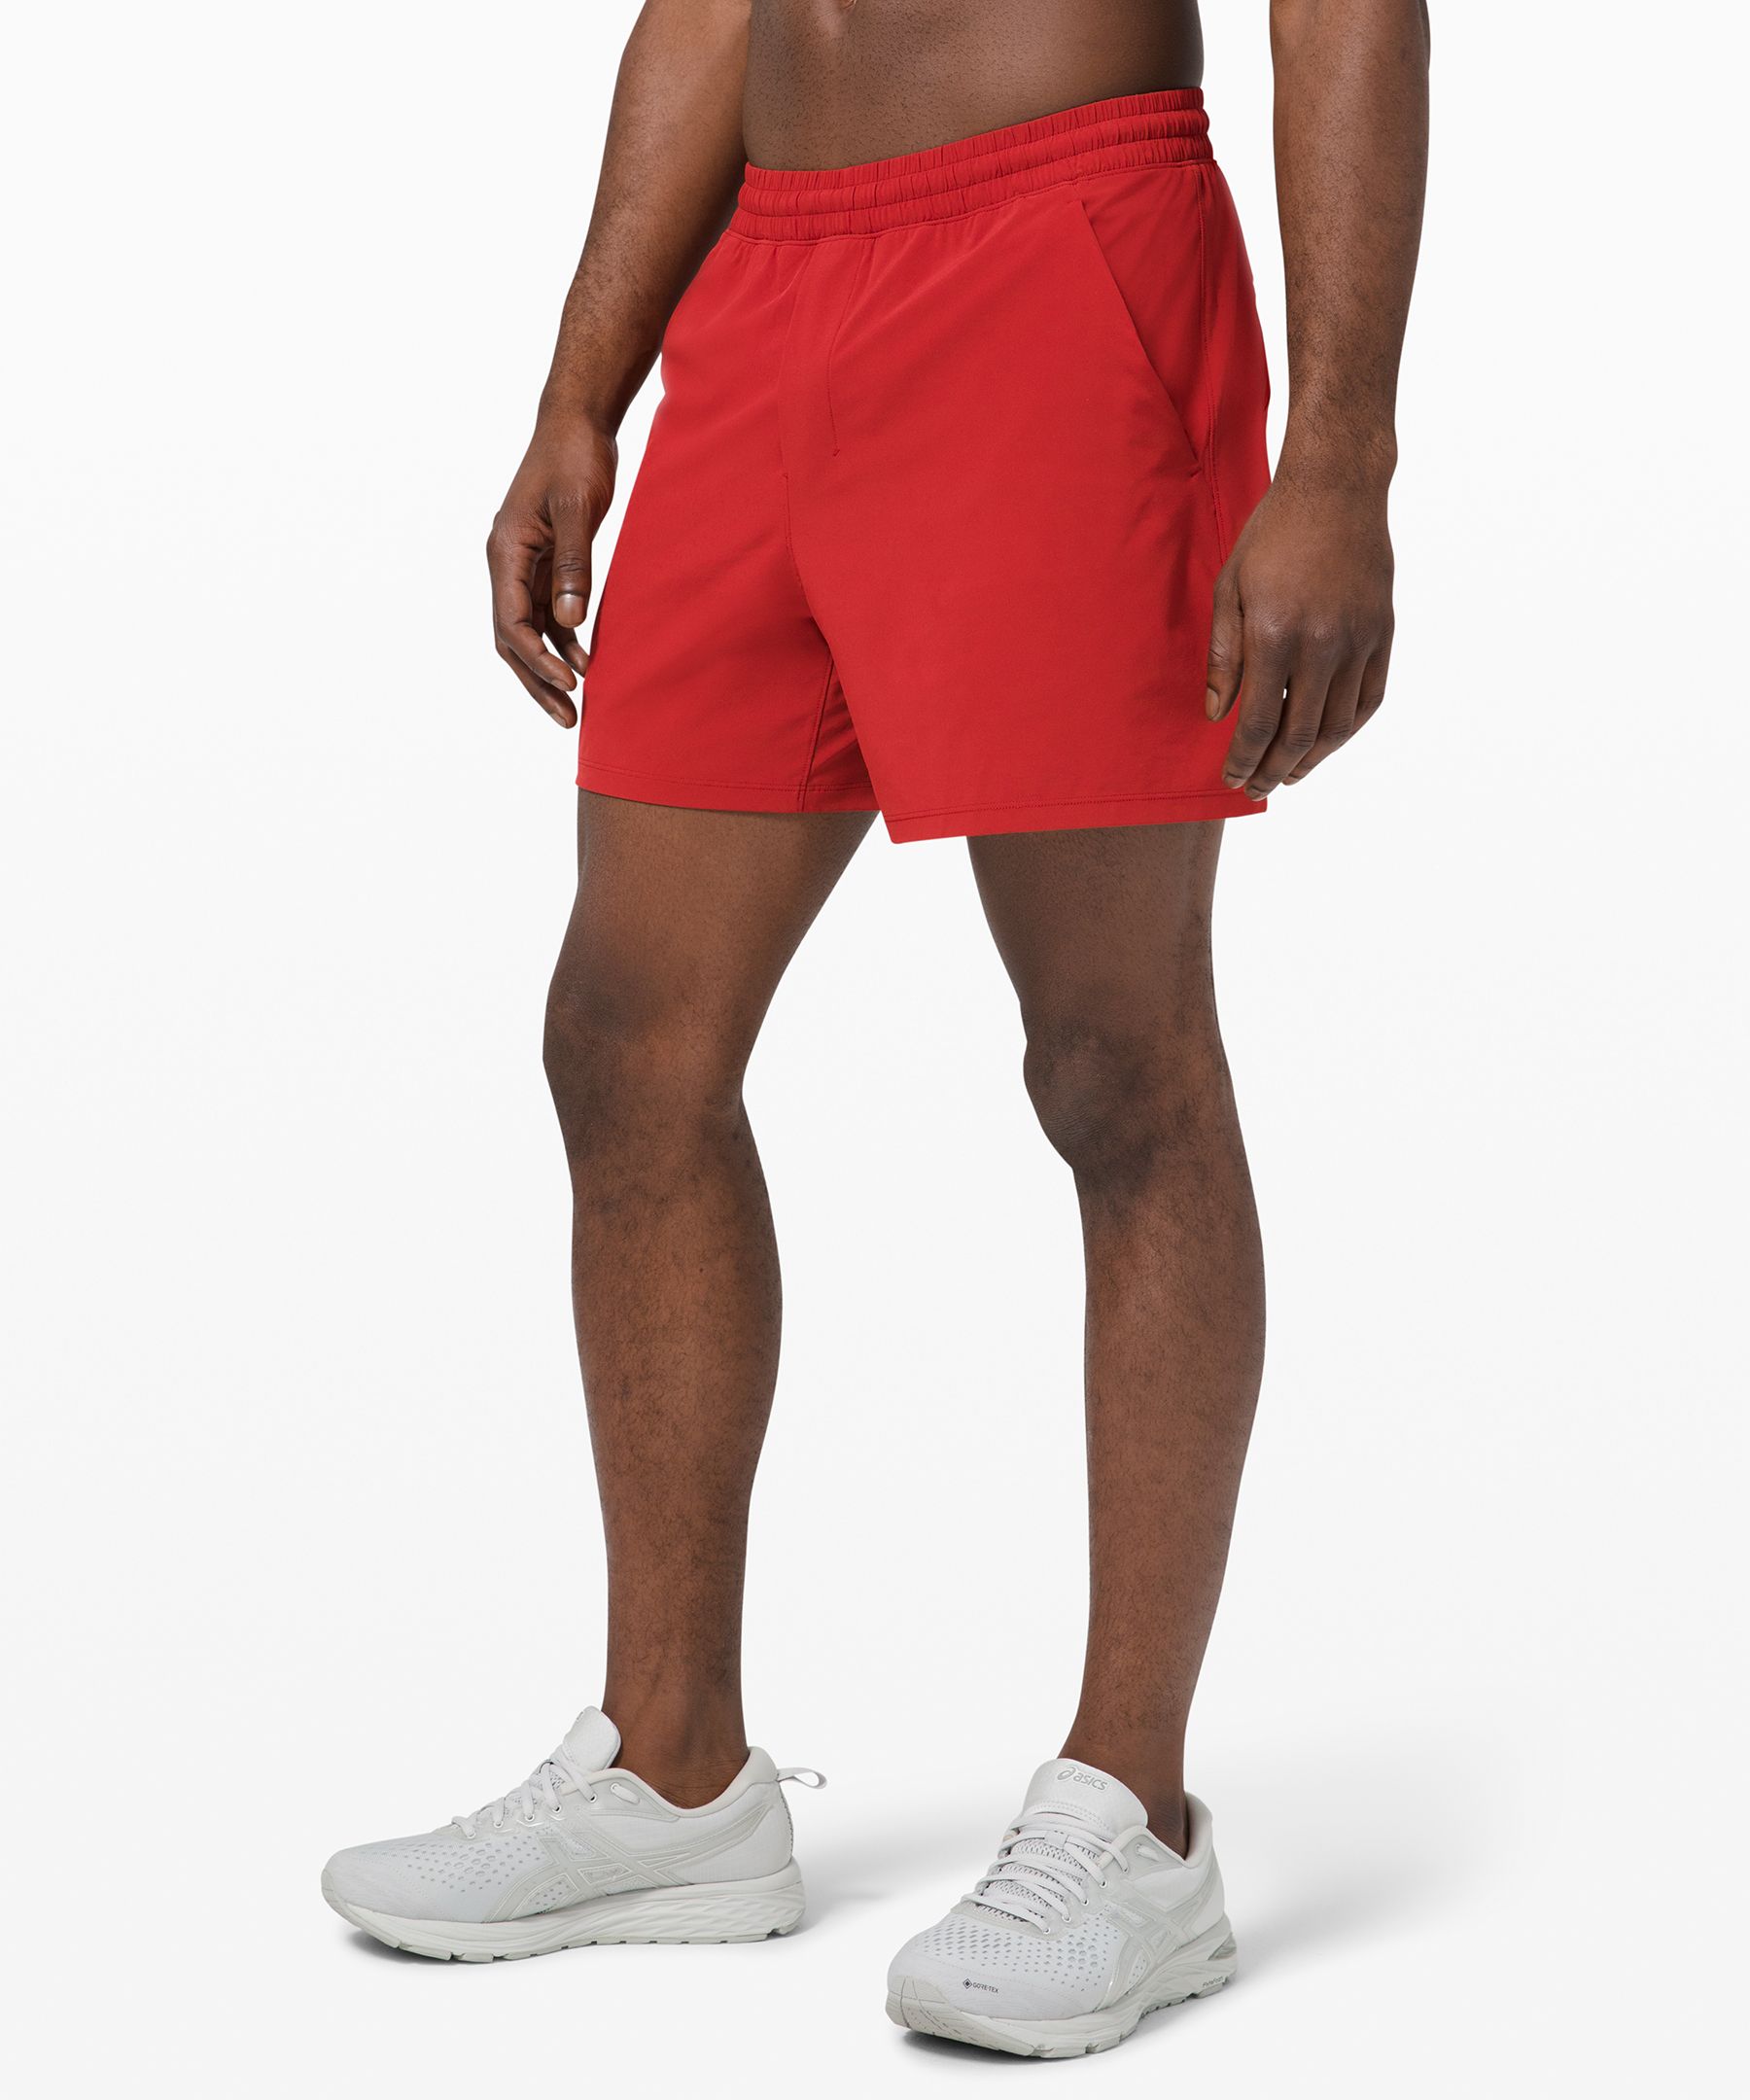 lululemon shorts red